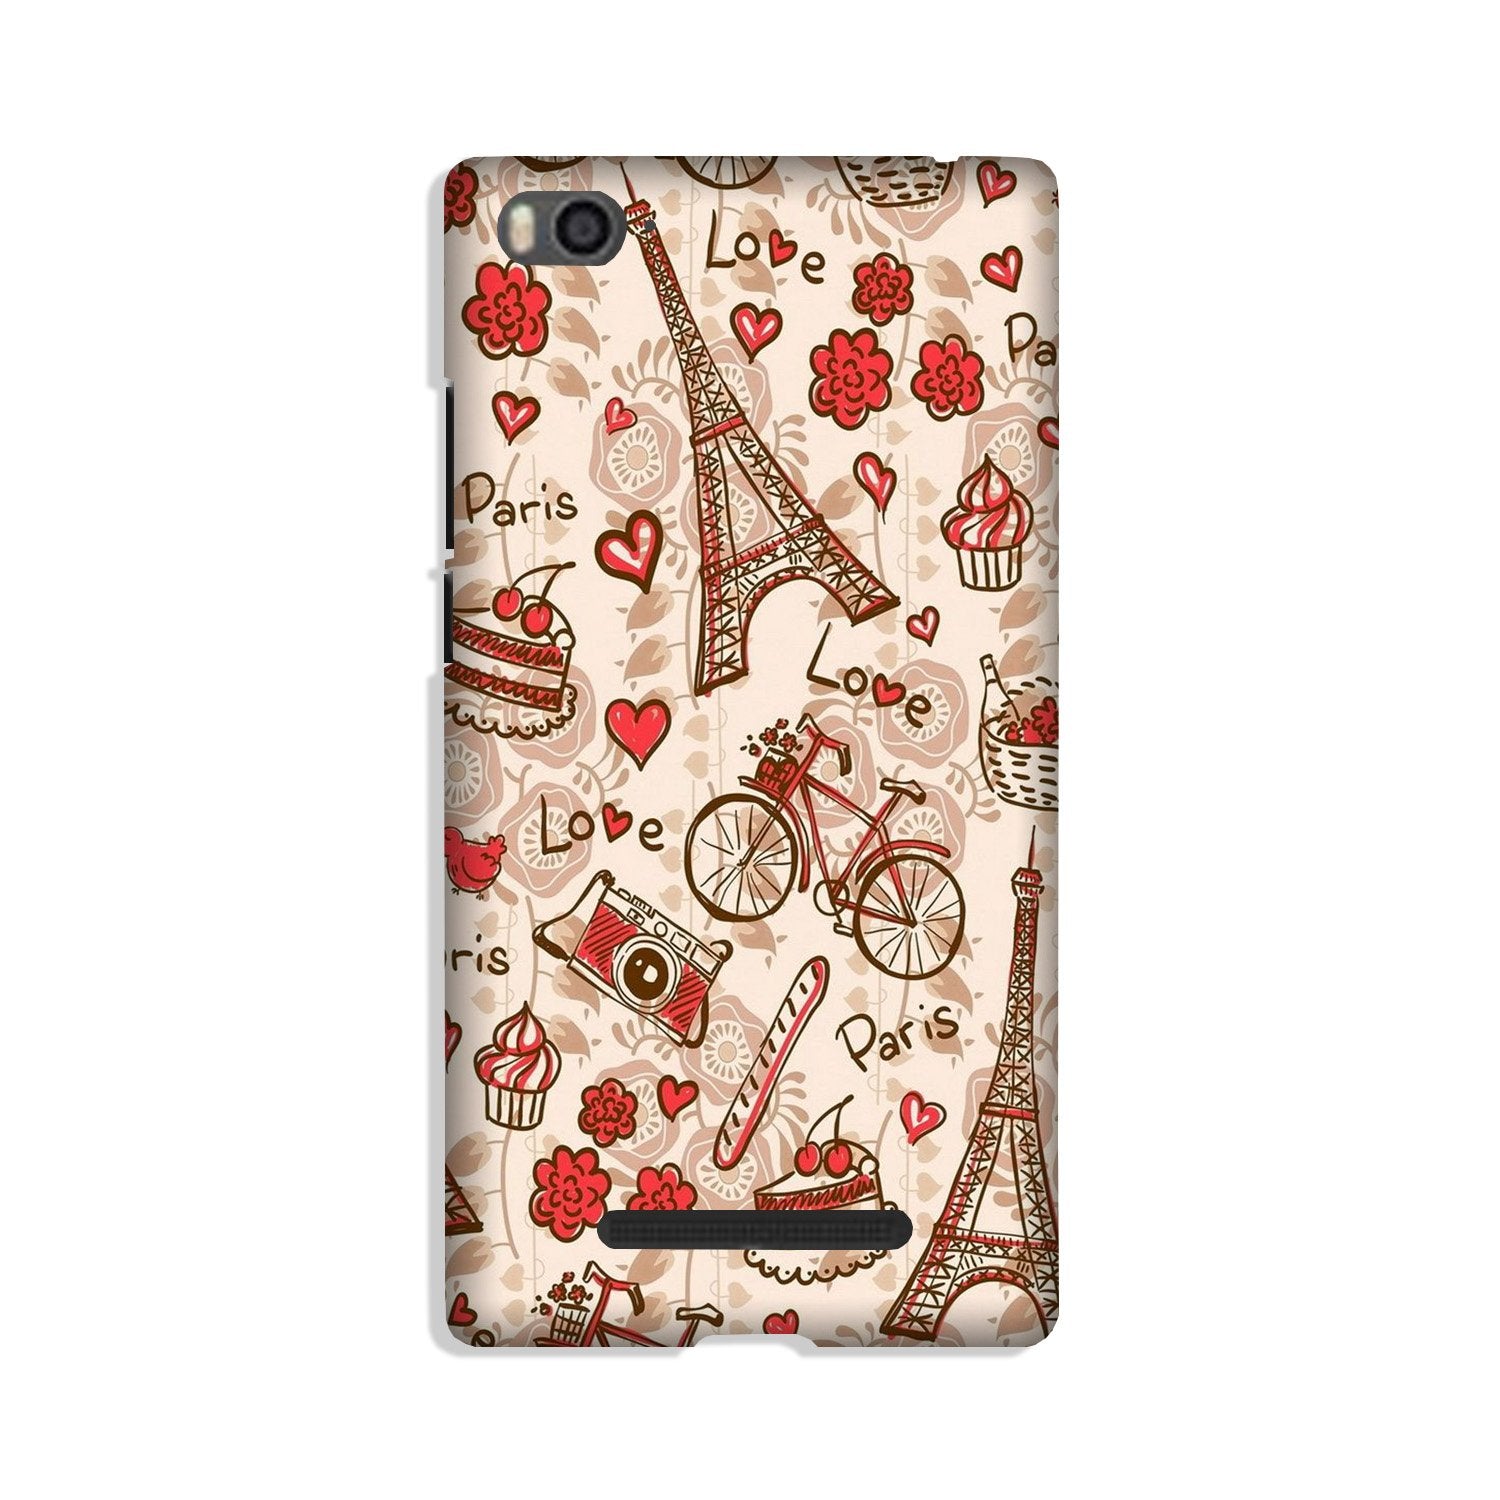 Love Paris Case for Xiaomi Mi 4i(Design - 103)